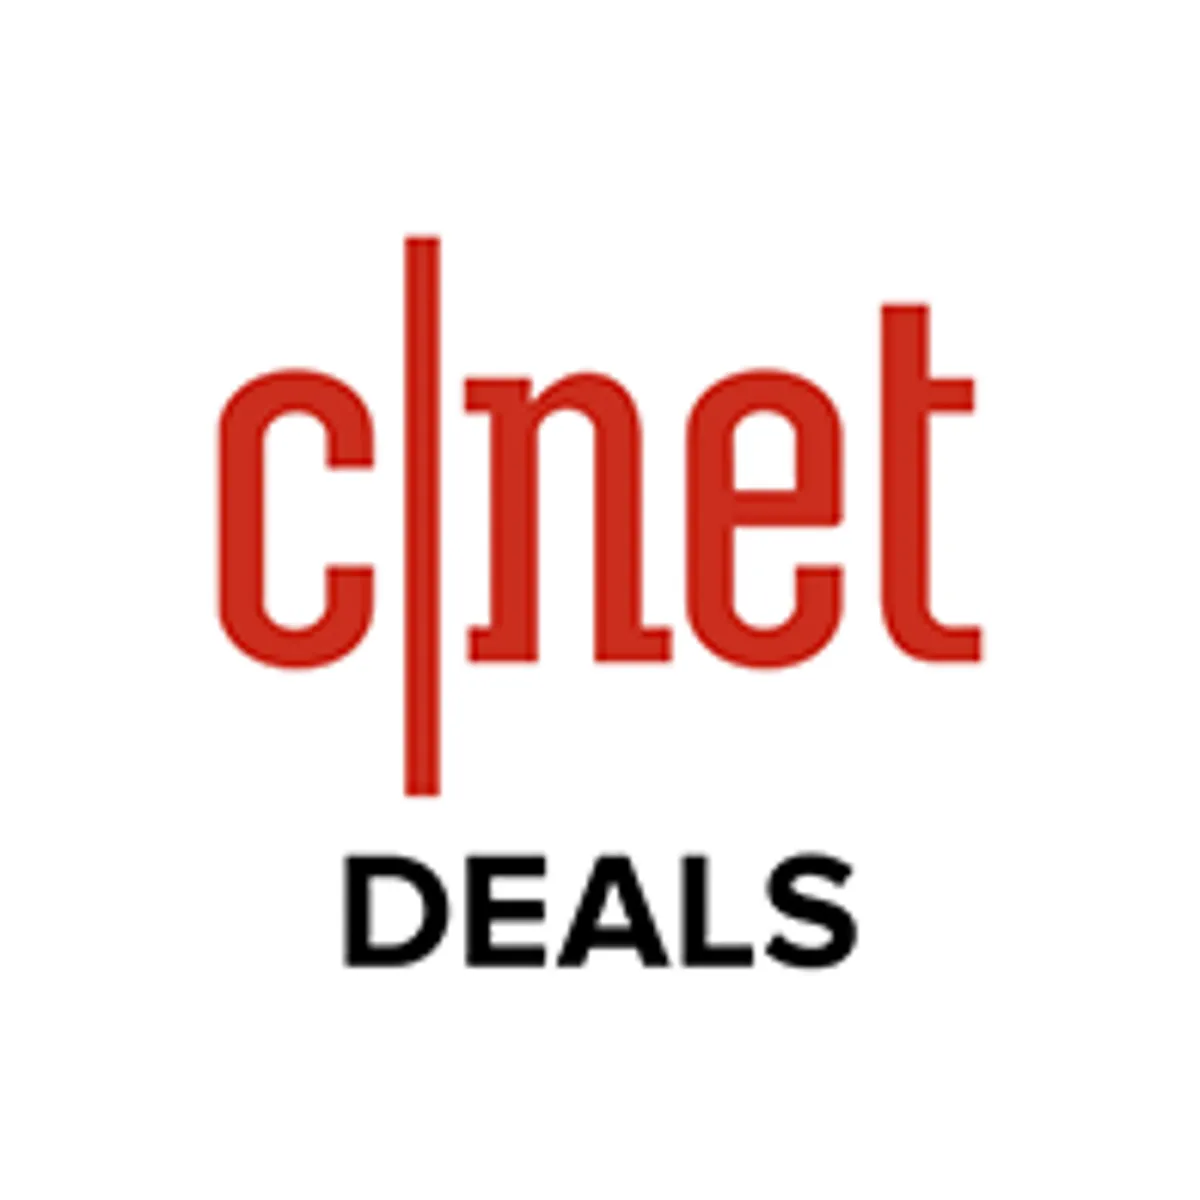 cnet-deals-logo